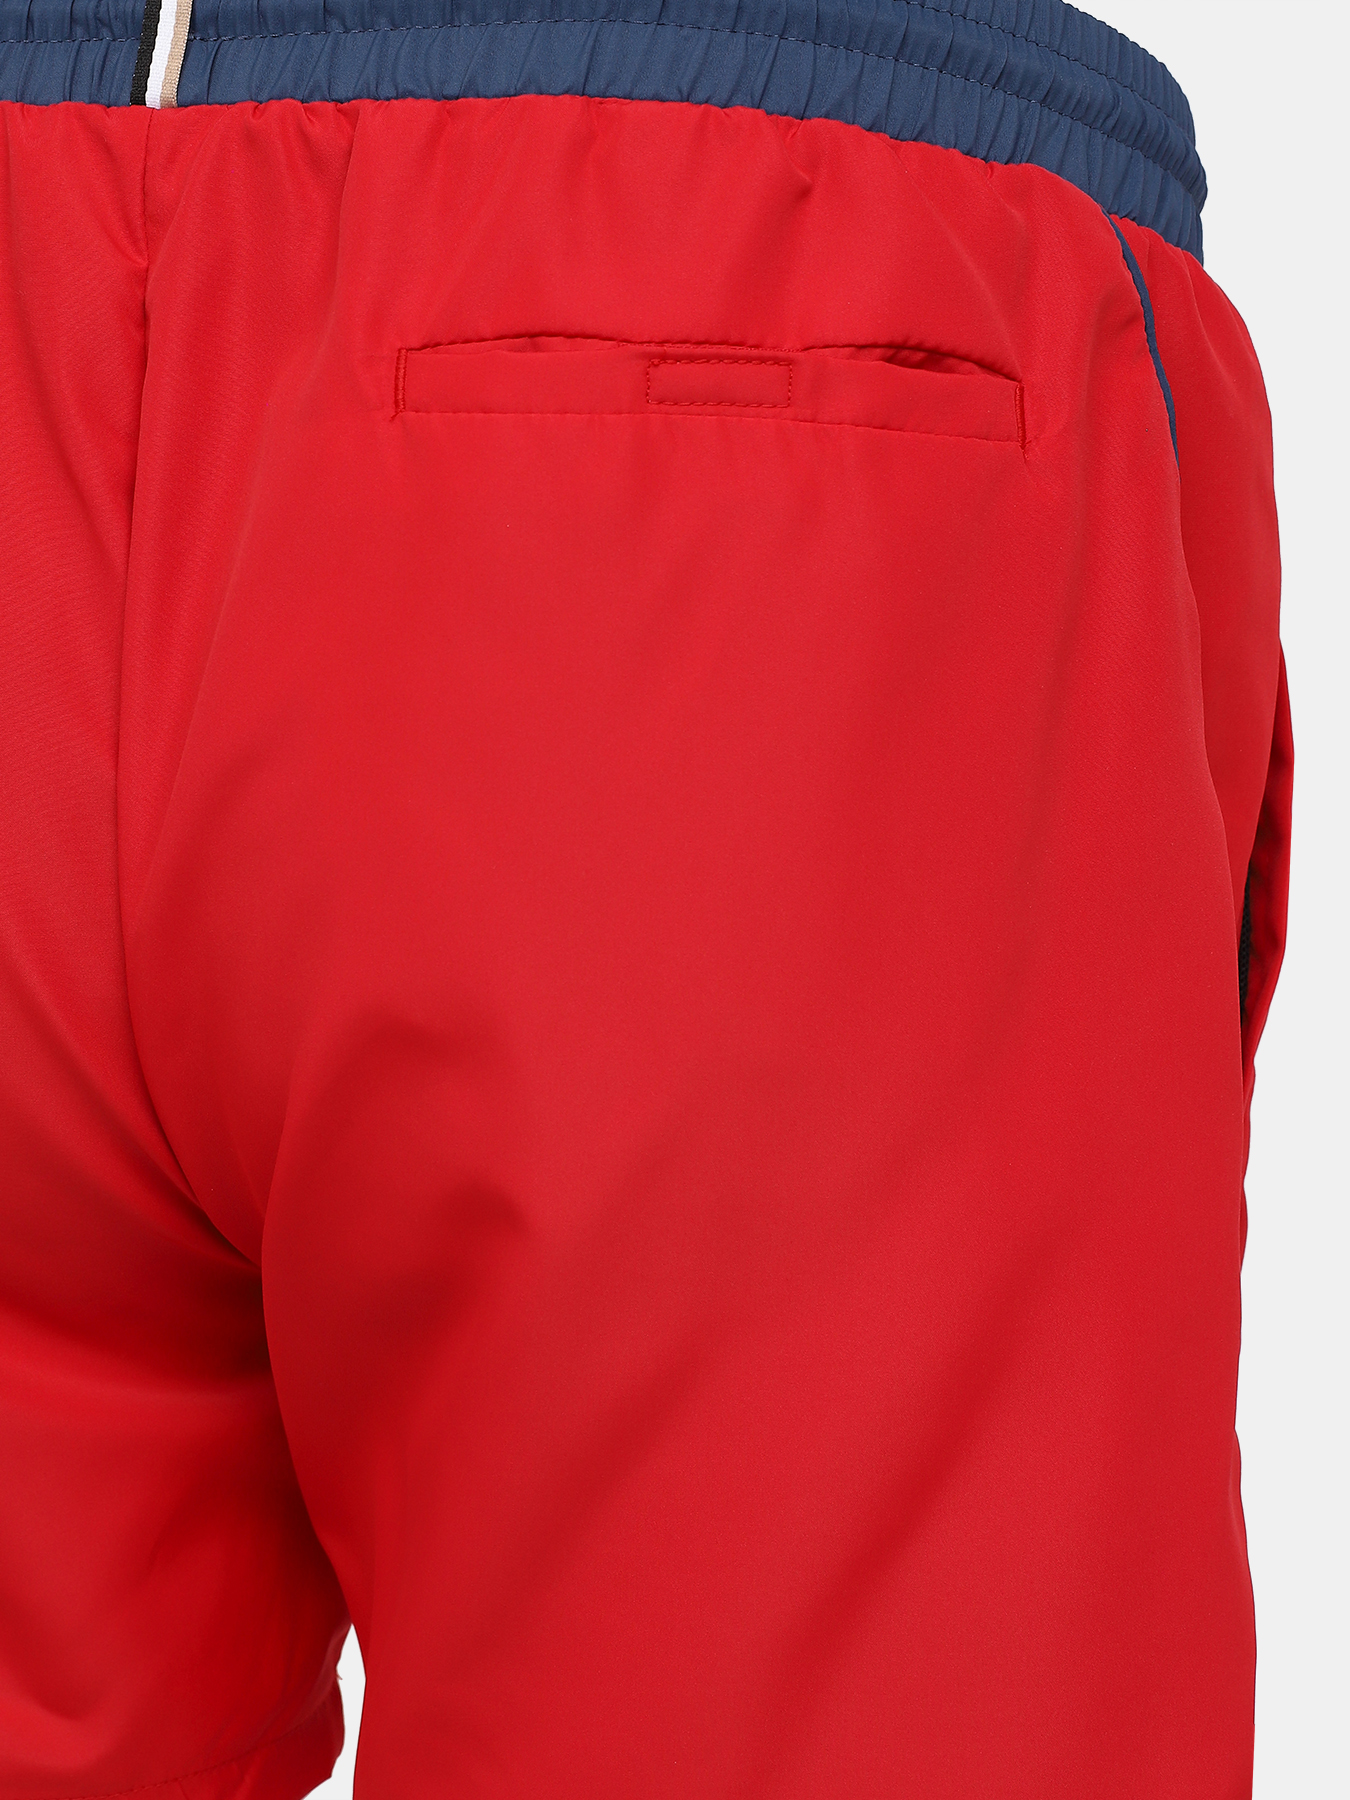 Плавательные шорты Starfish BOSS 416767-046, цвет красный, размер 54 - фото 4